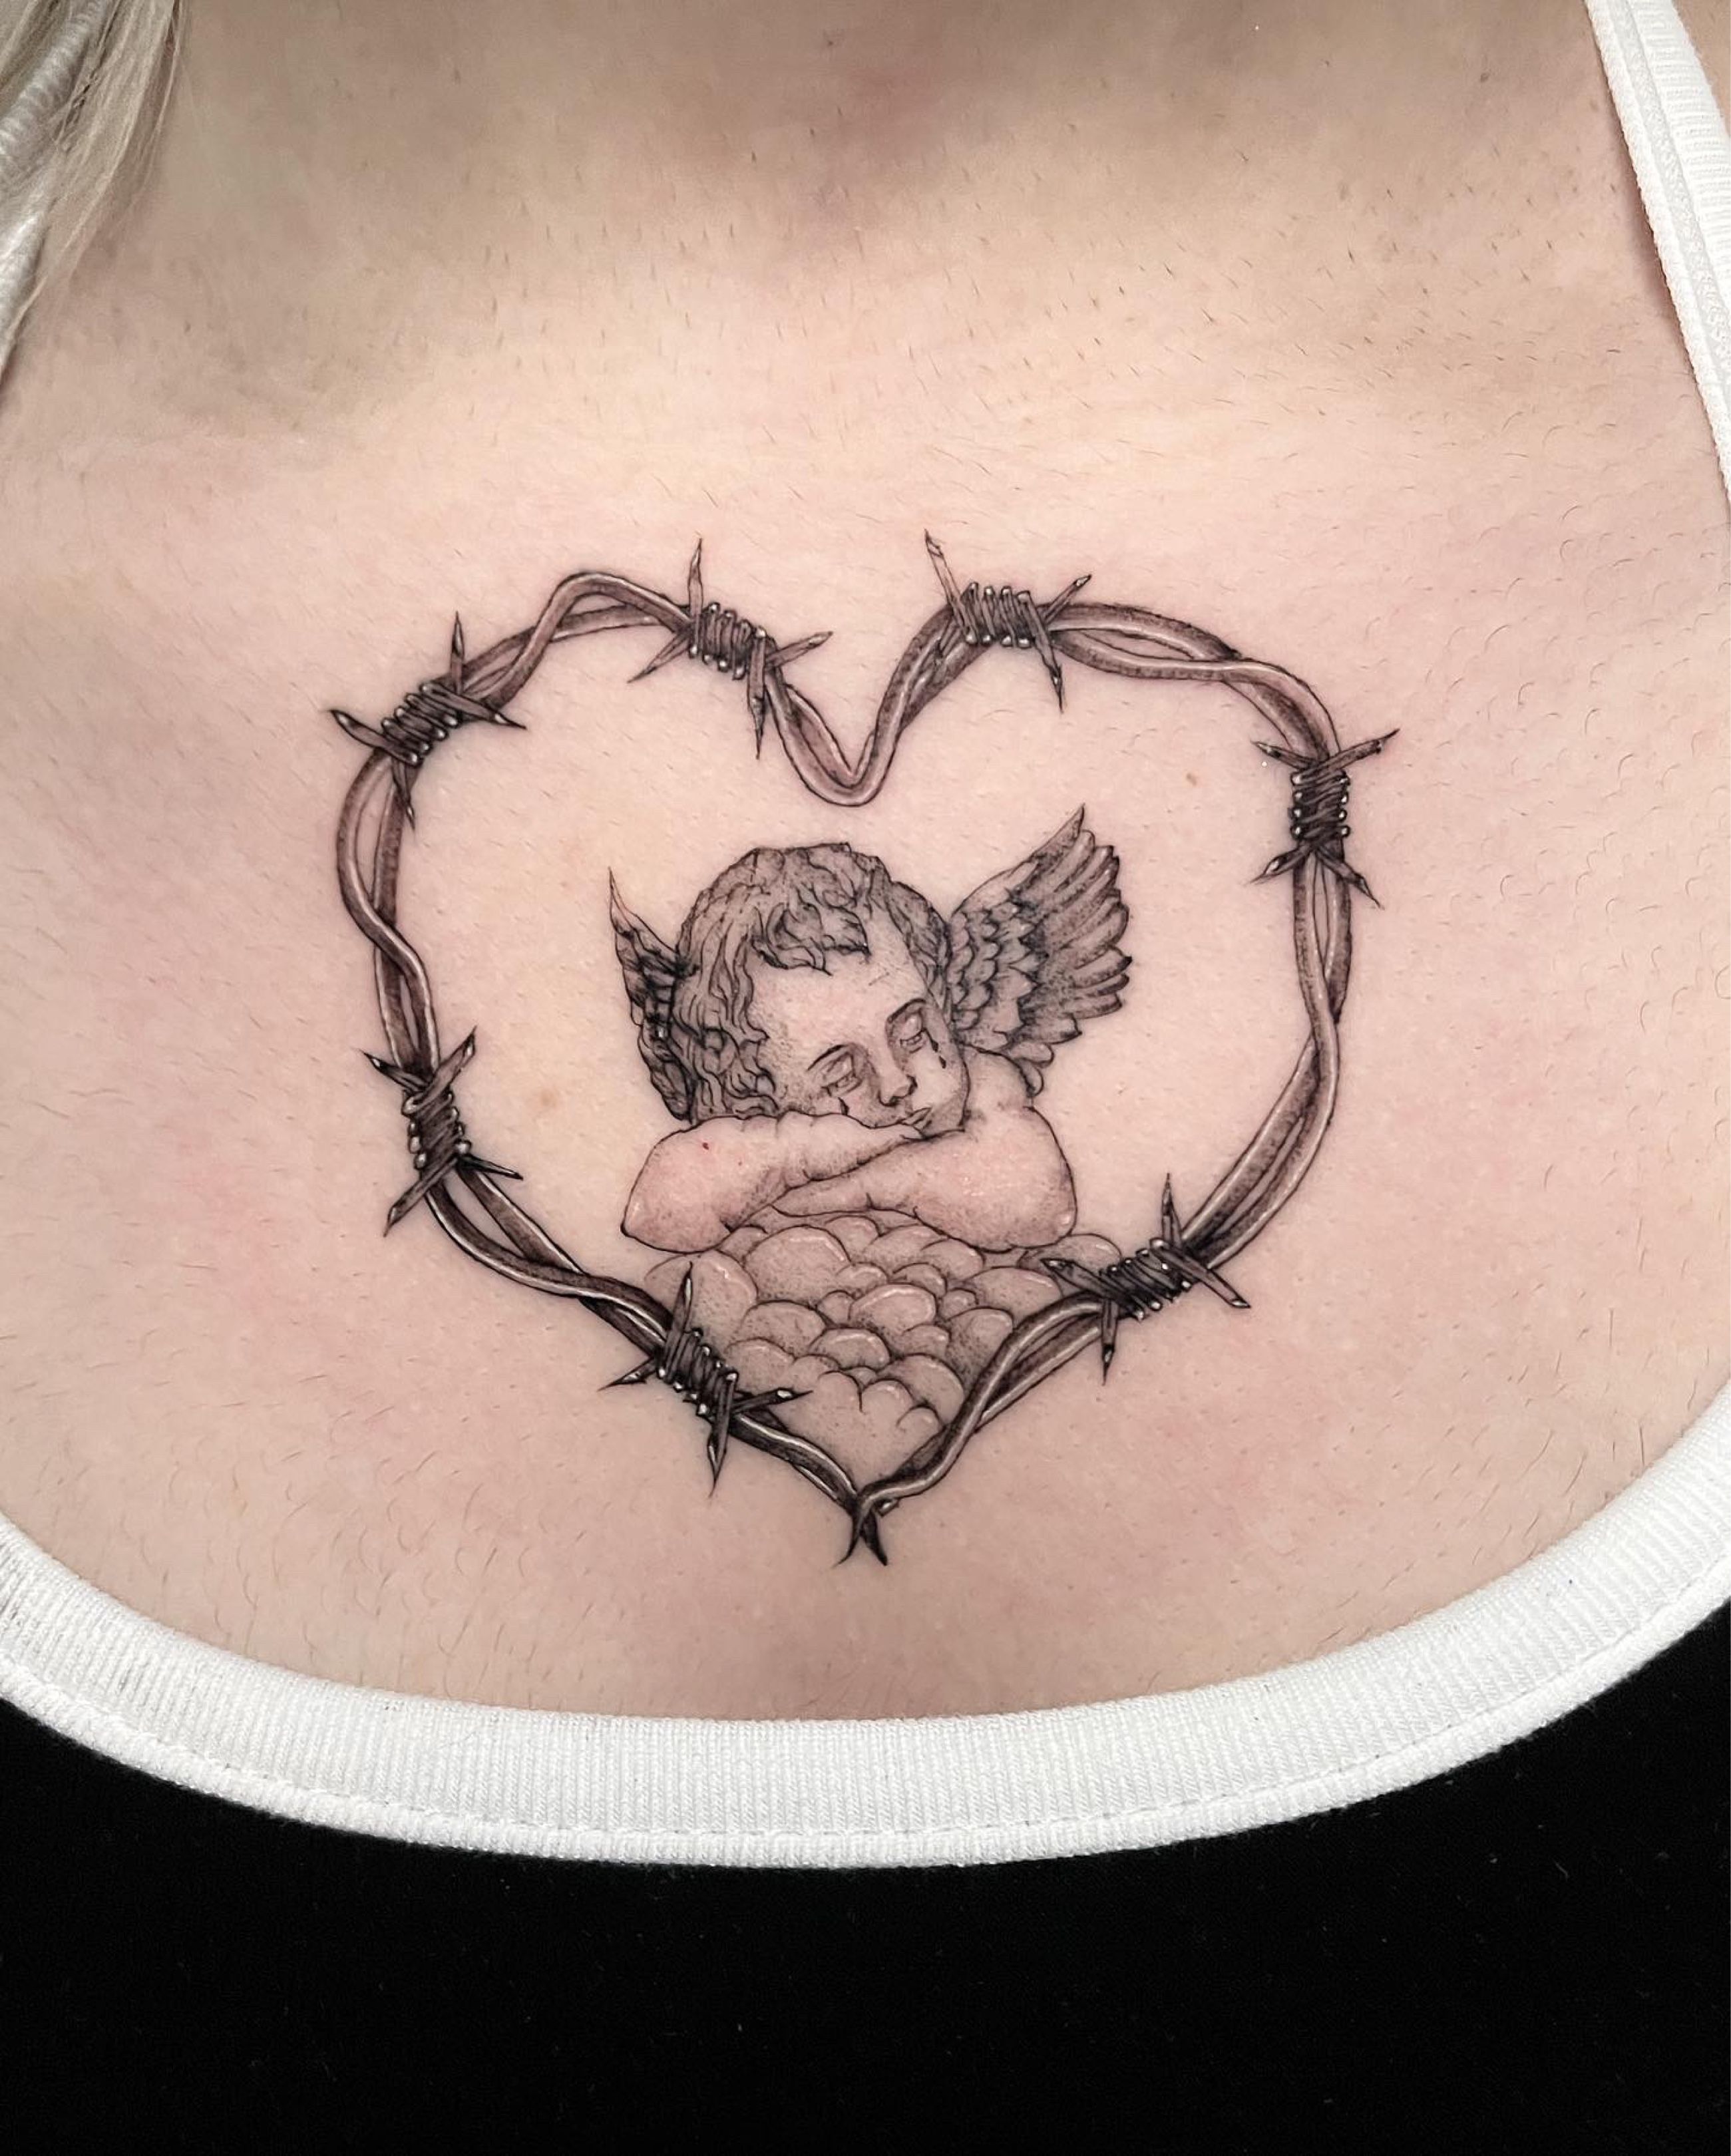 Large Arm Sleeve Tattoo Angel Wings Pigeon Jesus Waterproof Temporary  Sticker | eBay